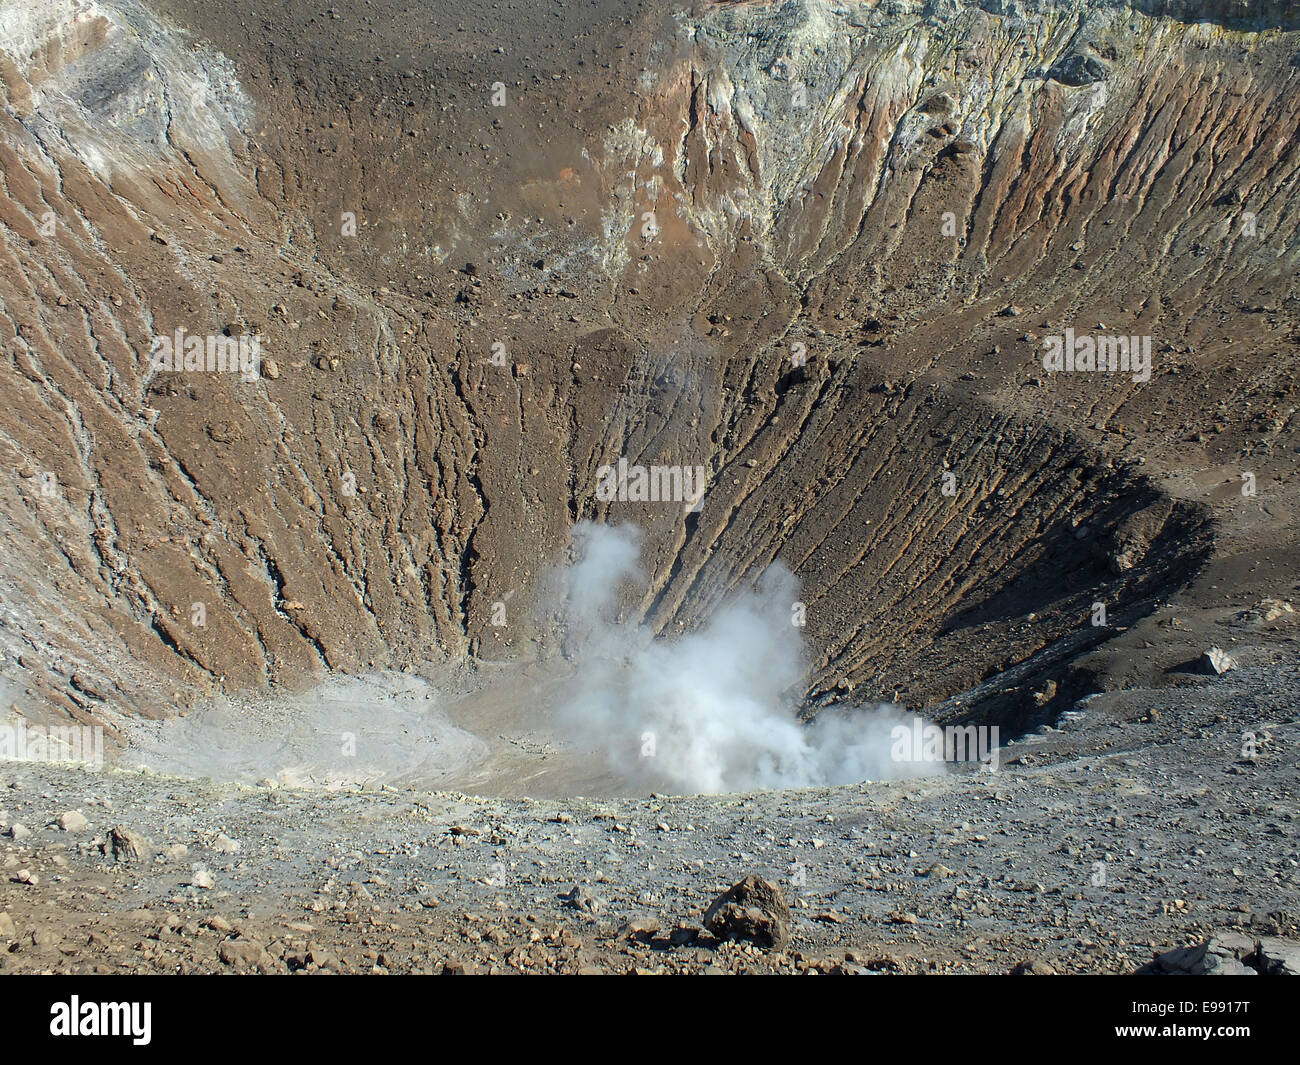 Der Kraterboden des Gran Krater auf der Insel Vulcano ist oft durch den aufsteigenden Dampf bedeckt. Giftige Gase können den Aufenthalt in den Krater gefährlich machen. -Juni 2014 Stockfoto